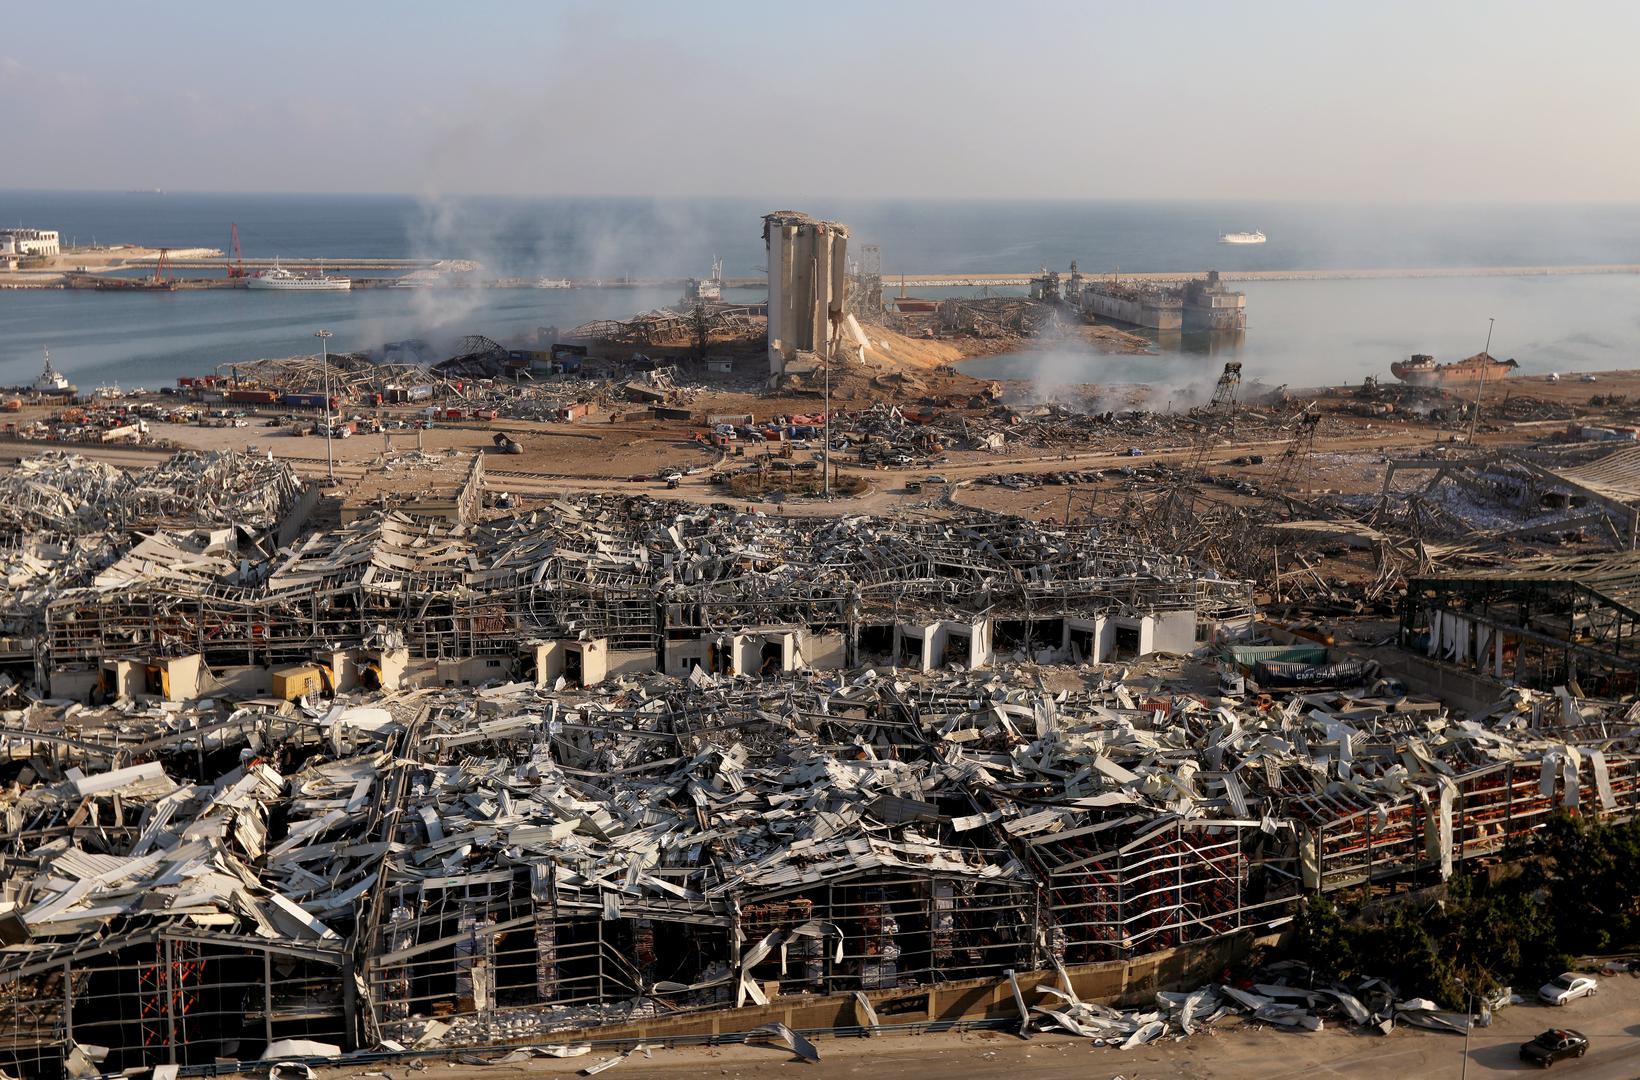 presudu za eksploziju bejrut razoren eksplozijom august 2020.